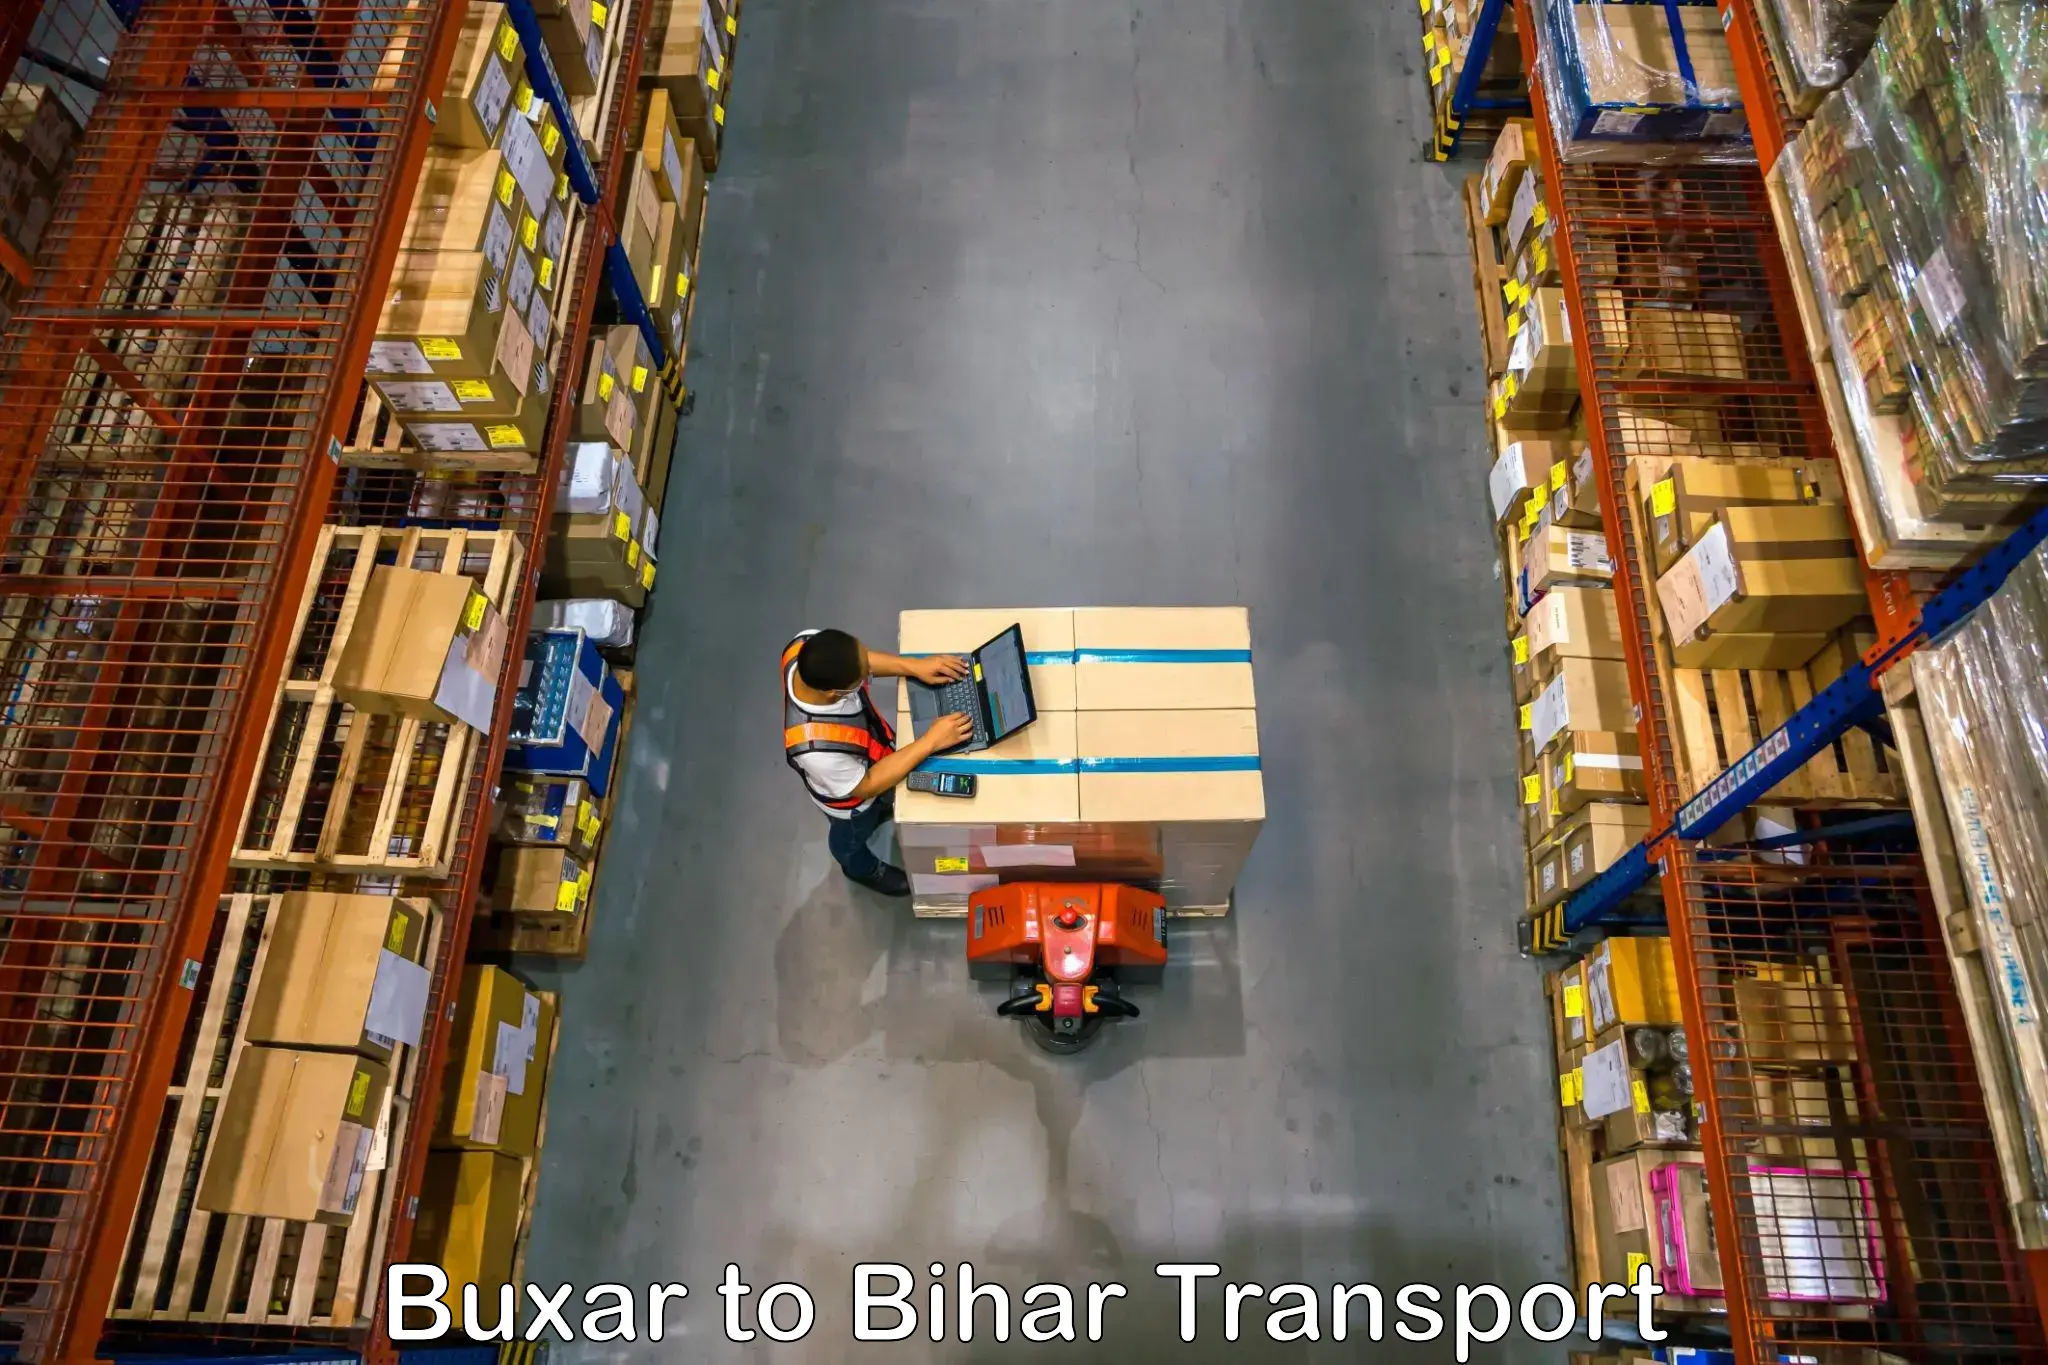 Furniture transport service Buxar to Kharagpur Munger